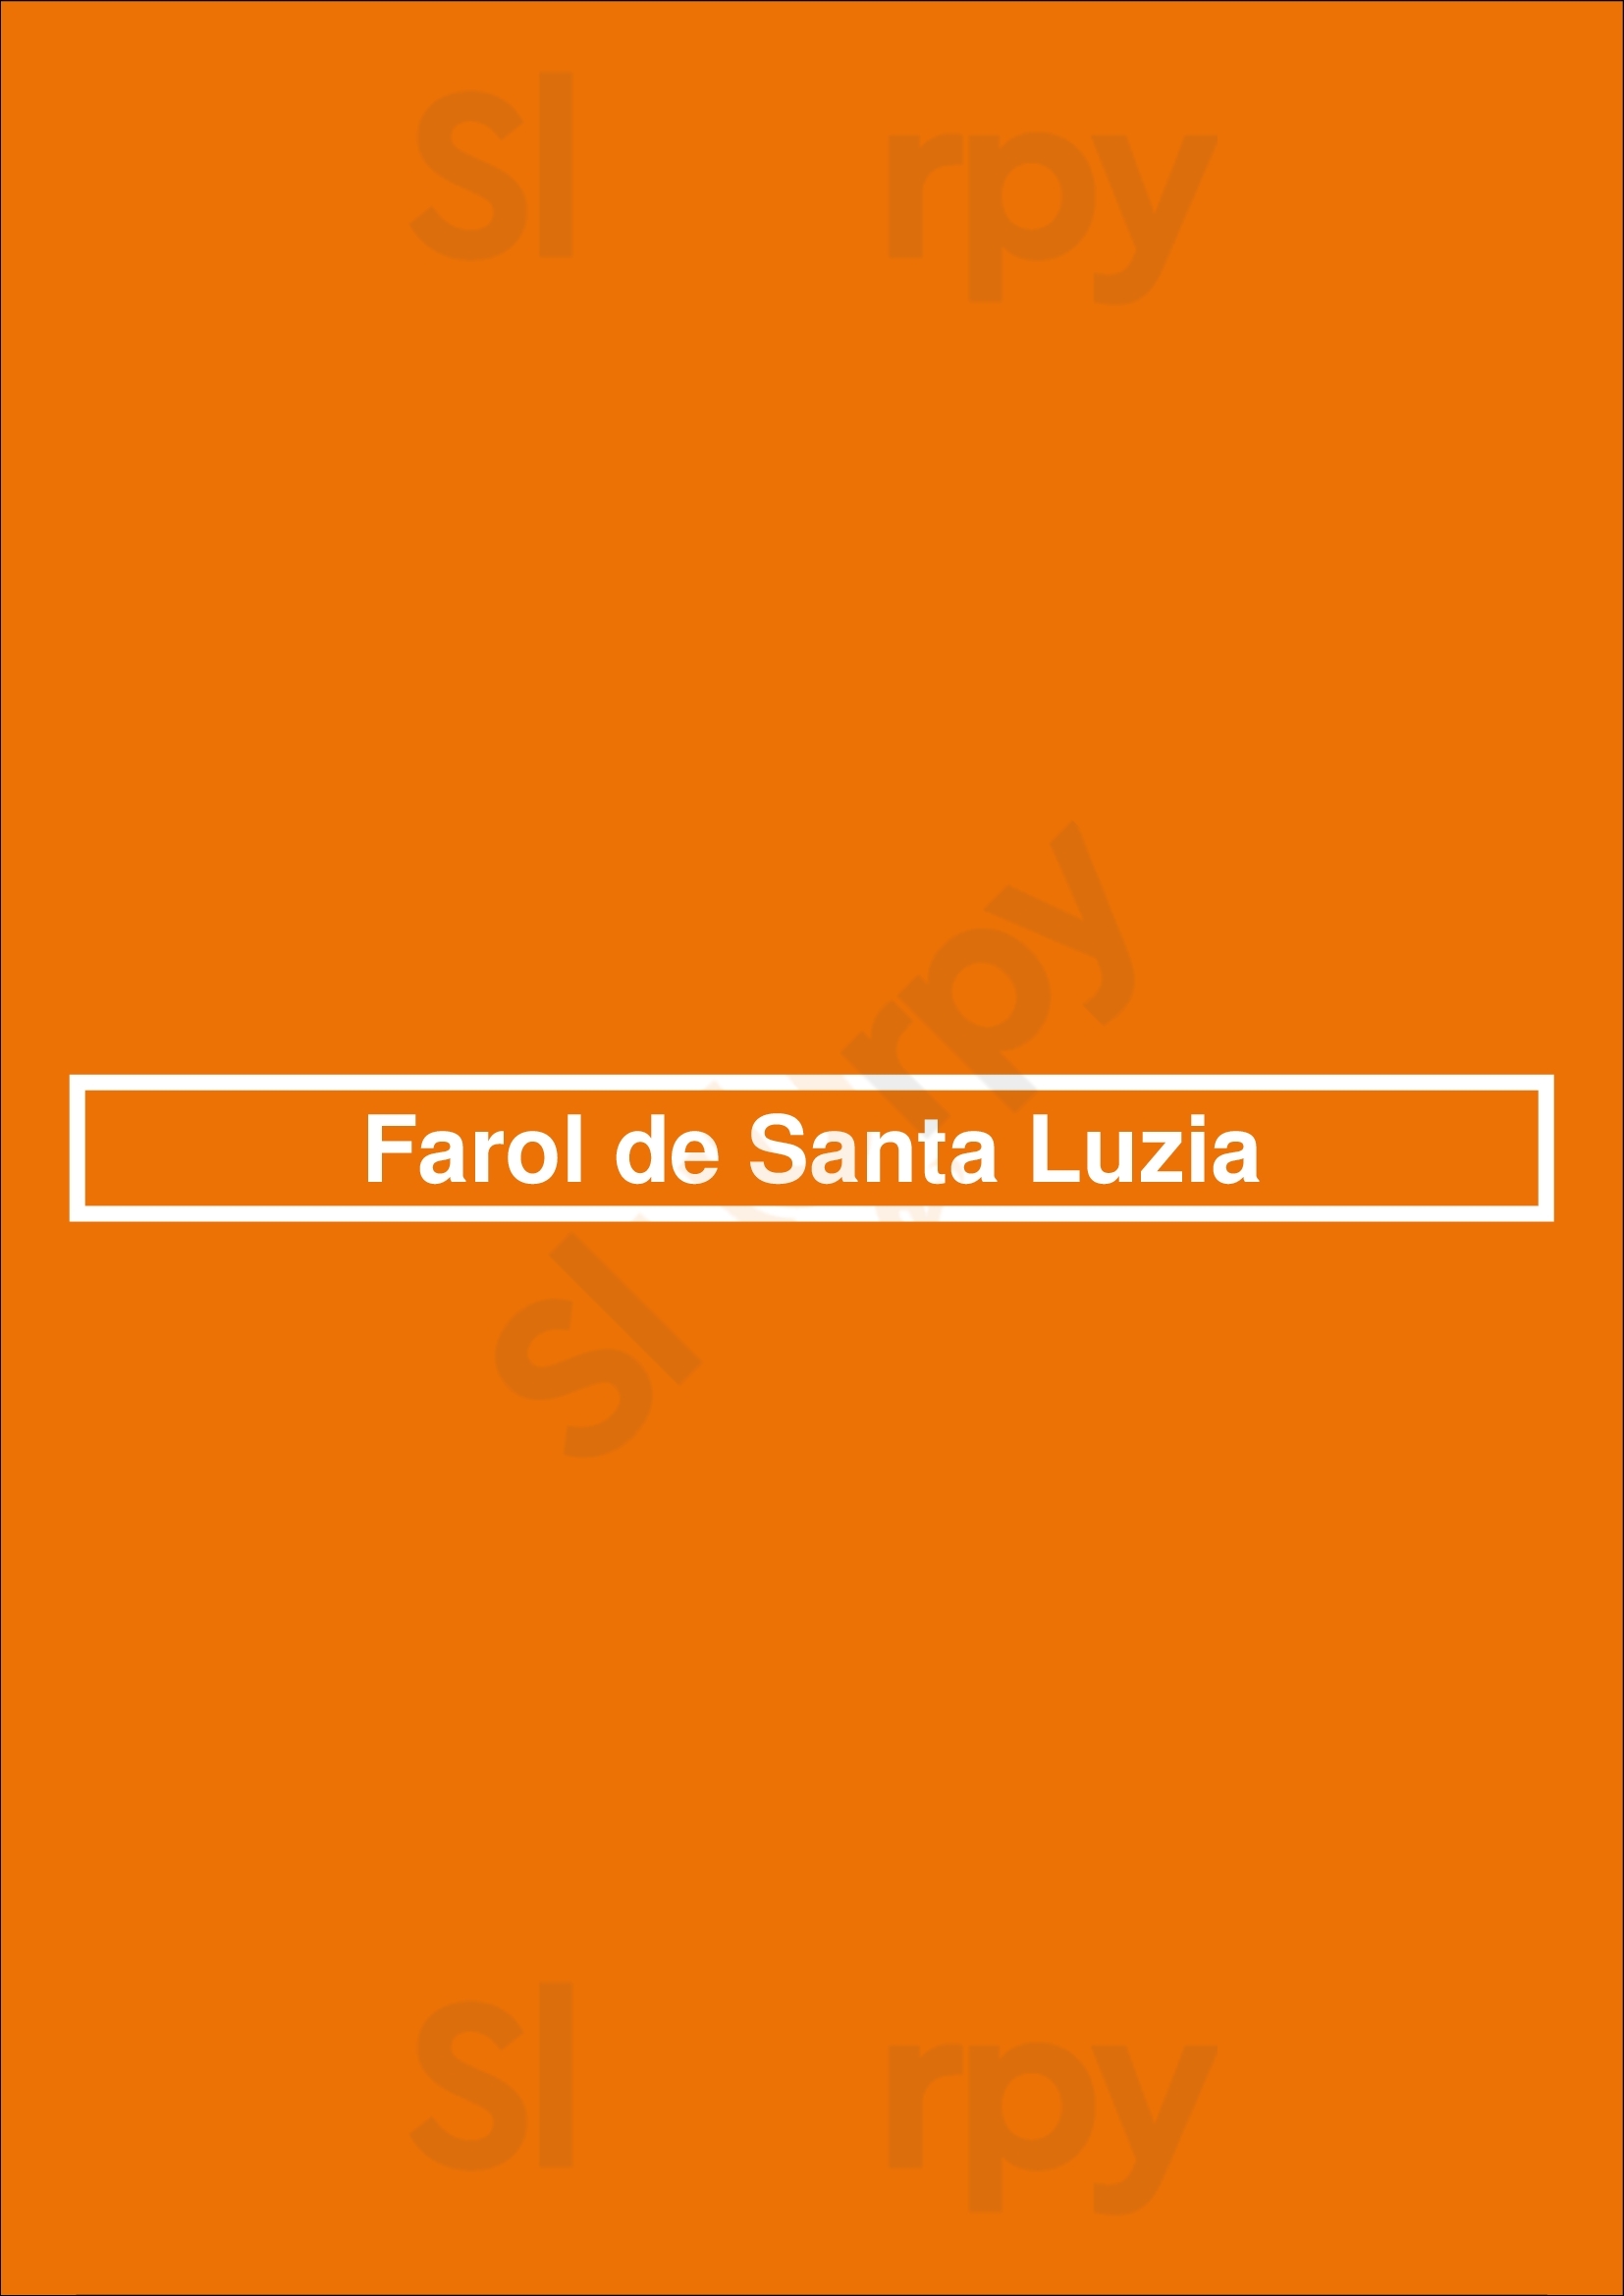 Farol De Santa Luzia Lisboa Menu - 1